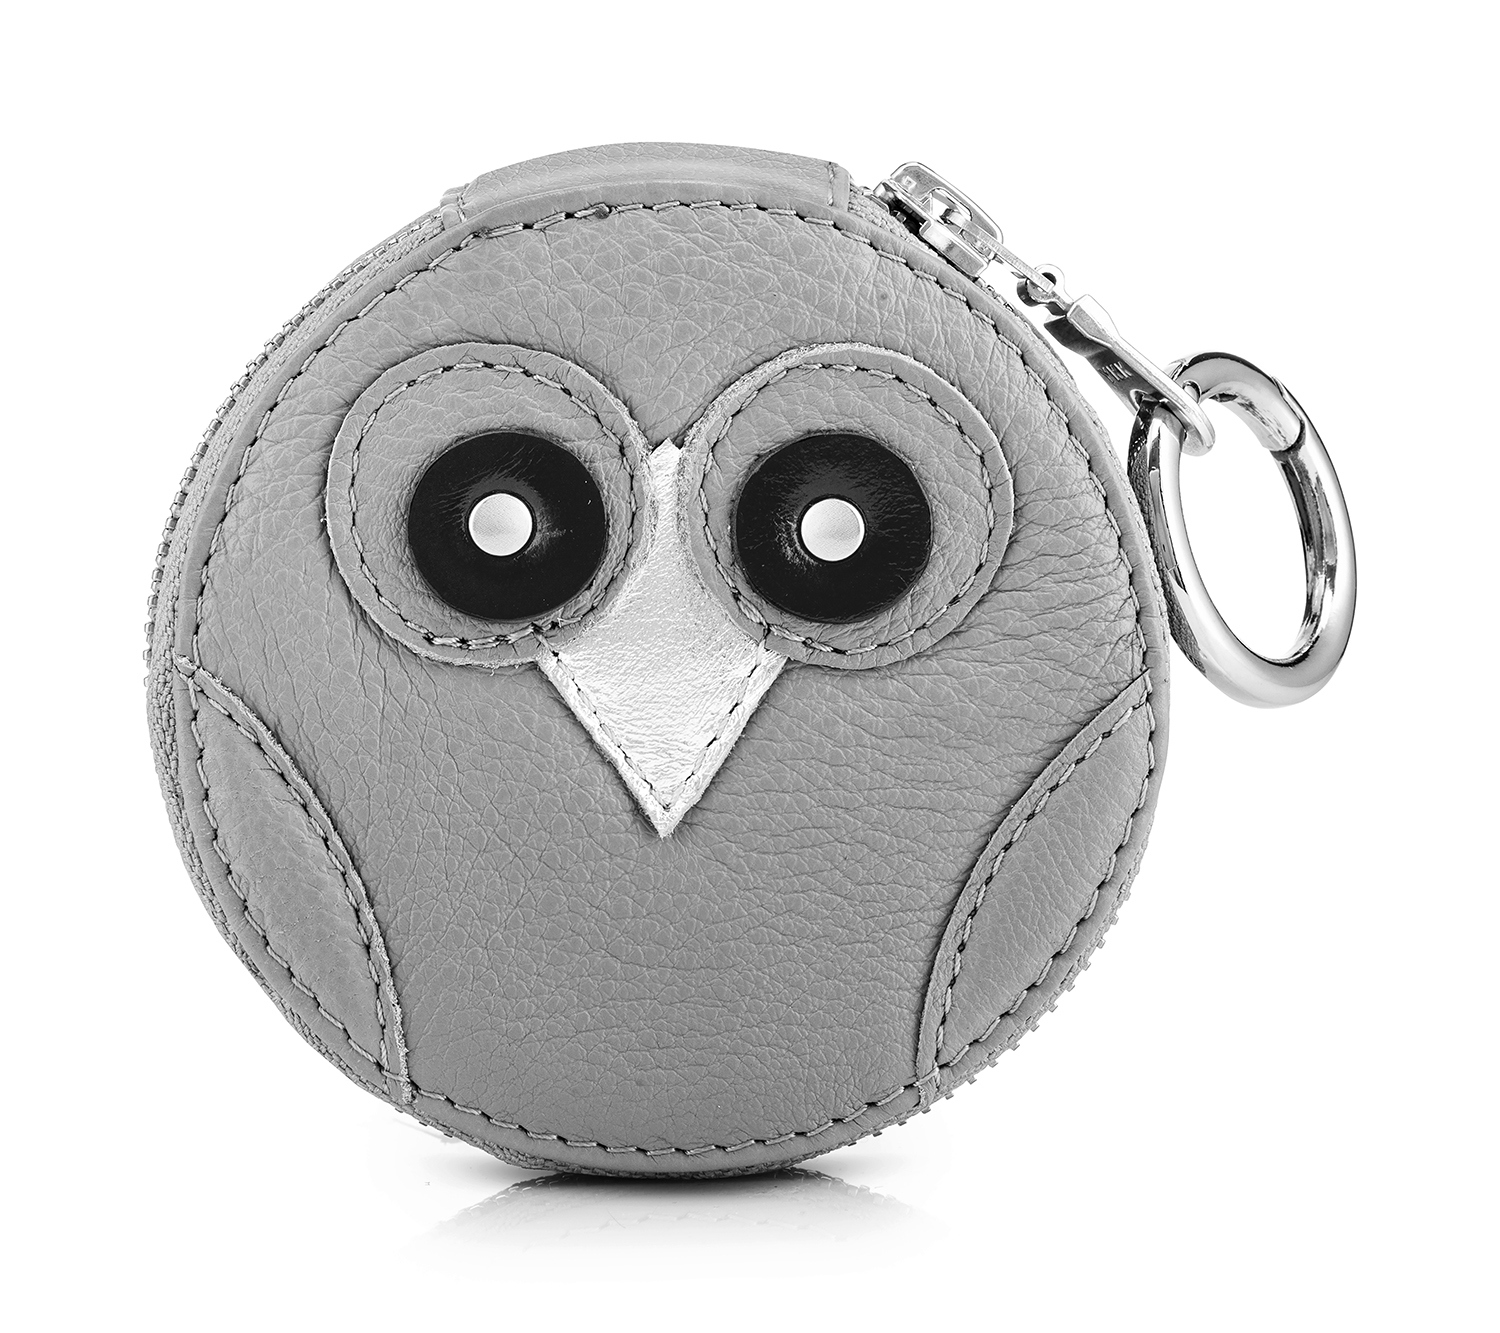 IDA owl purse - grey by Kasia Cichopek